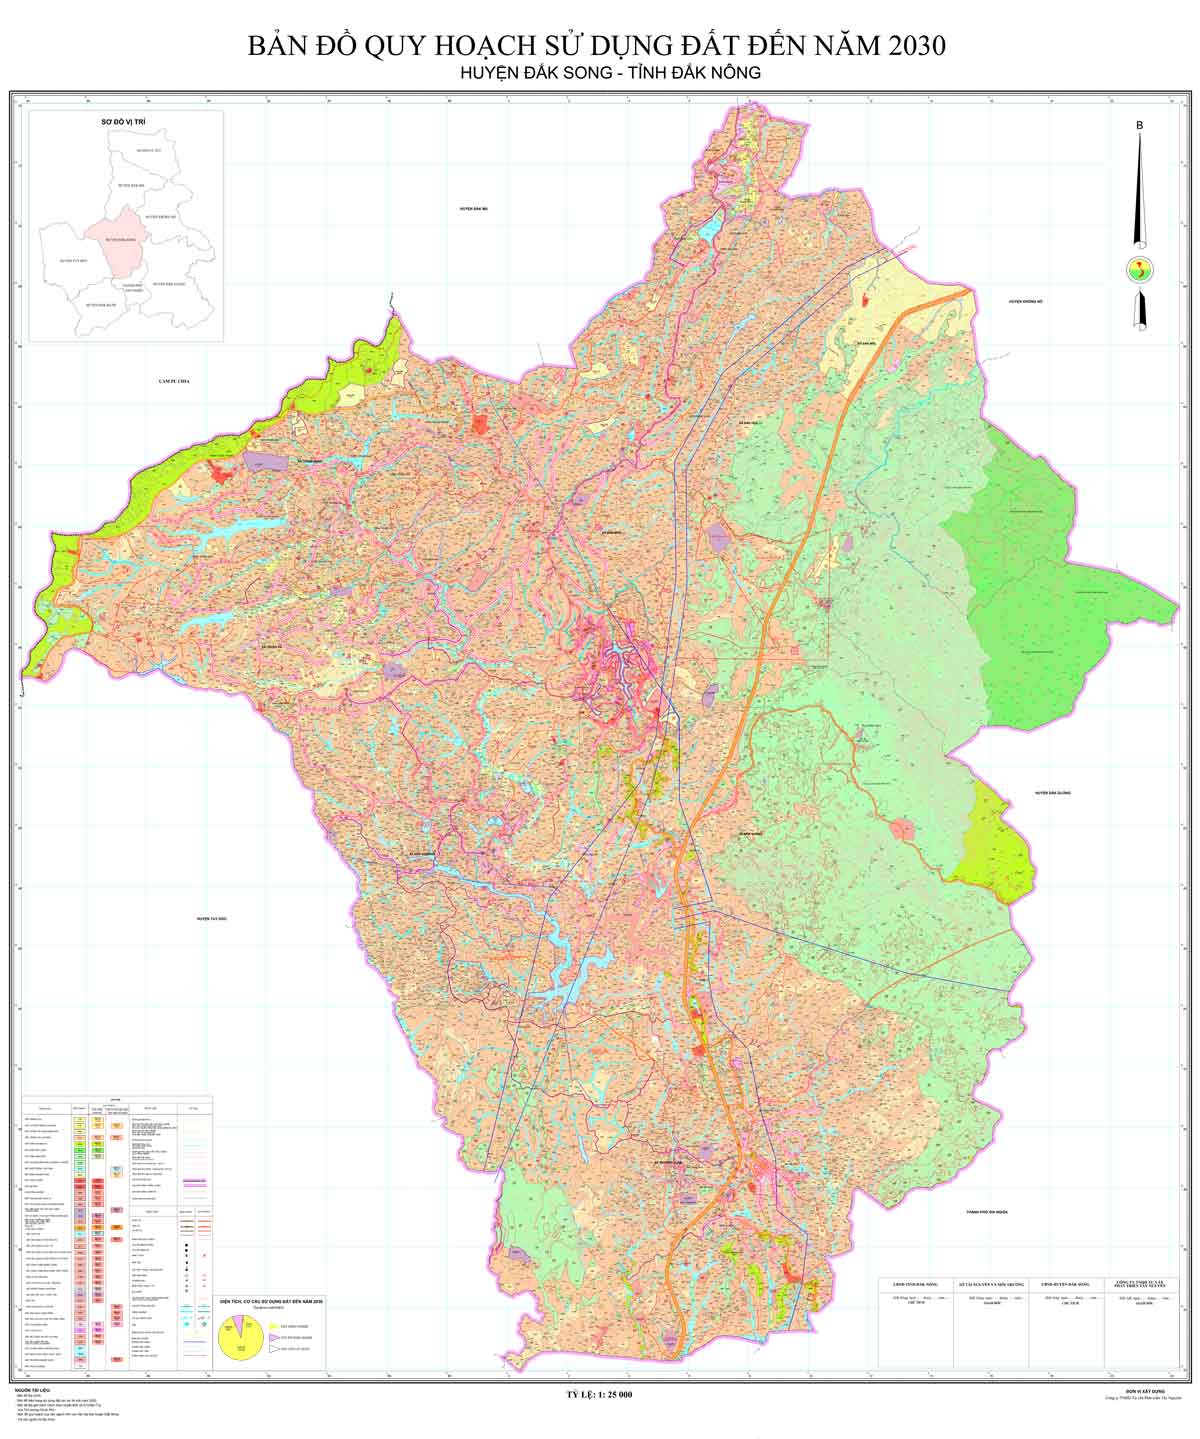 Bản đồ quy hoạch huyện Đắk Song đến năm 2030